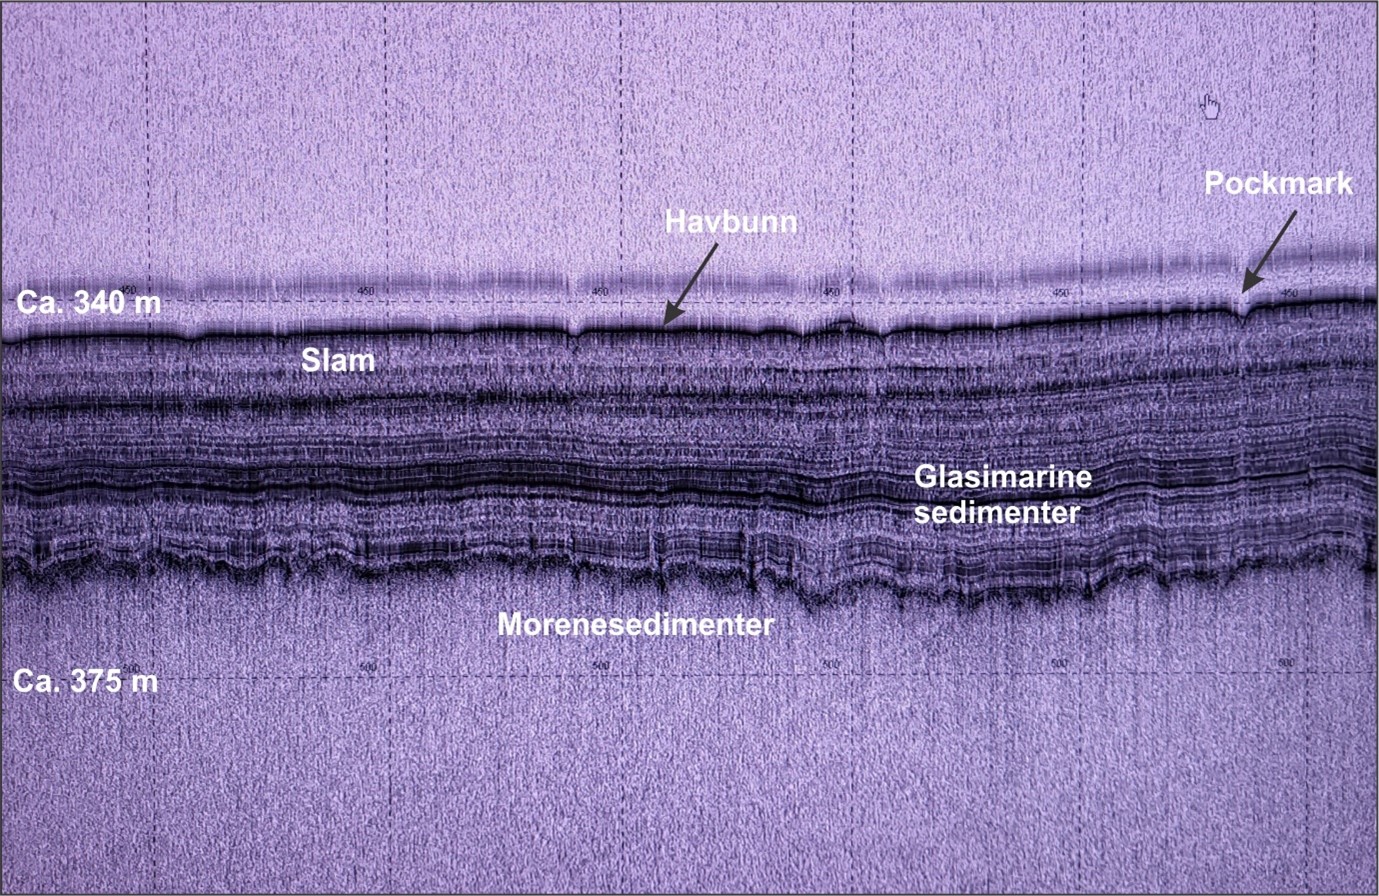 Sedimentekkolodd (Topas) viser lagdelte, finkornete slamavsetninger avsatt på havbunnen etter slutten av siste istid i området Vestavind B, ikke langt fra Troll-feltet. De små nedsenkningene i havbunnen er pockmark, som representerer groper i havbunnen der det har strømmet ut væske eller gass. Lagdelte, glasimarine sedimenter ble avsatt under isavsmeltingen på slutten av siste istid.